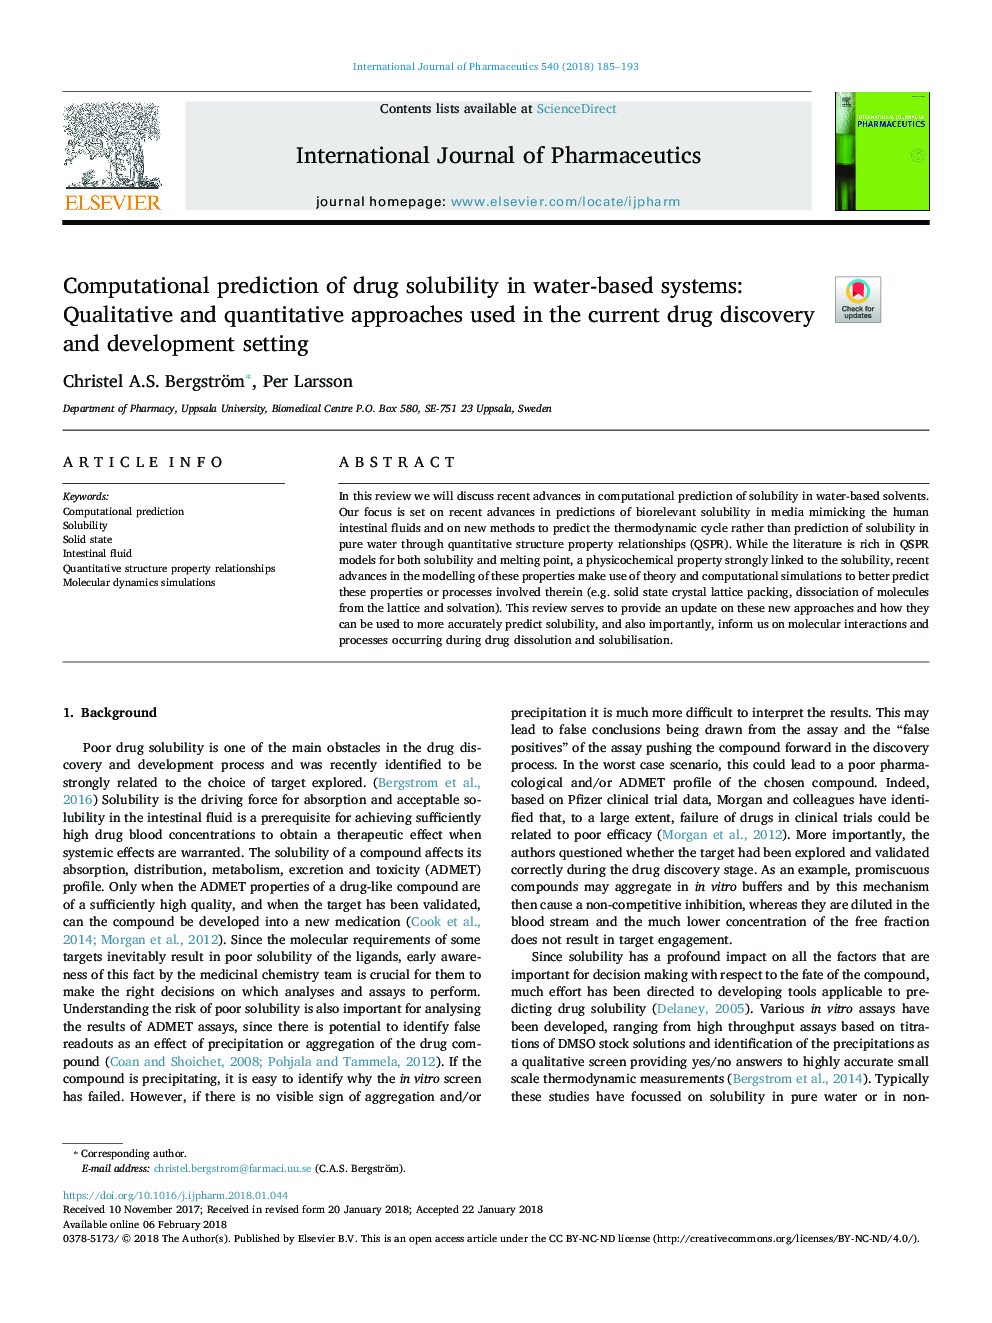 پیش بینی محاسبه حلالیت دارو در سیستم های مبتنی بر آب: روش های کیفی و کمی مورد استفاده در کشف و تنظیم فعلی مواد مخدر 